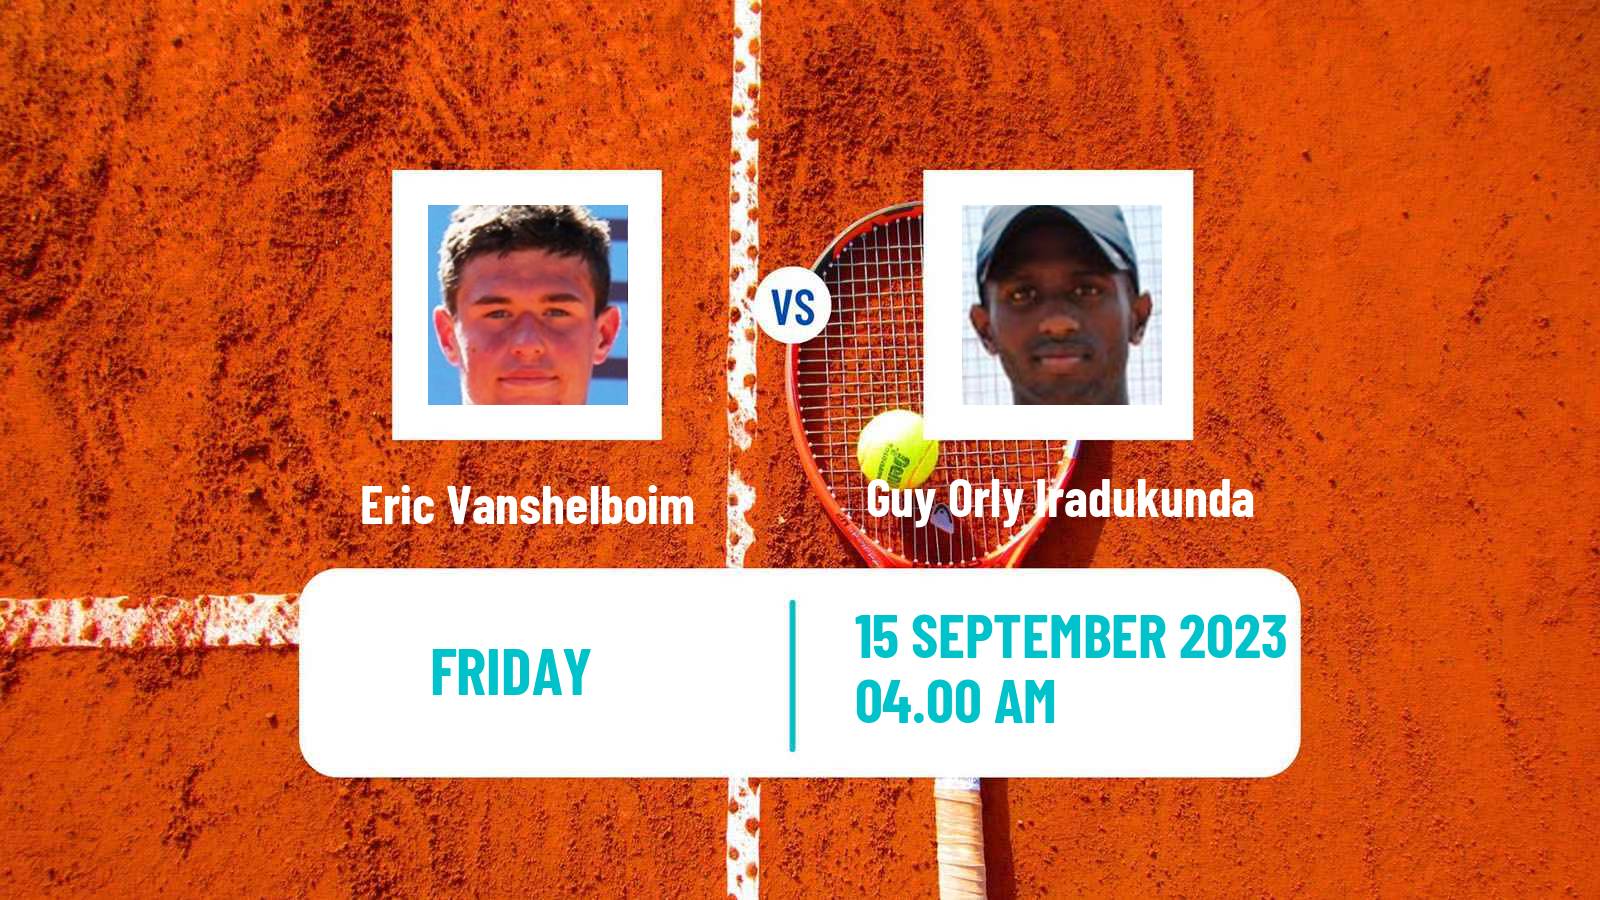 Tennis ITF M25 Kigali 2 Men Eric Vanshelboim - Guy Orly Iradukunda